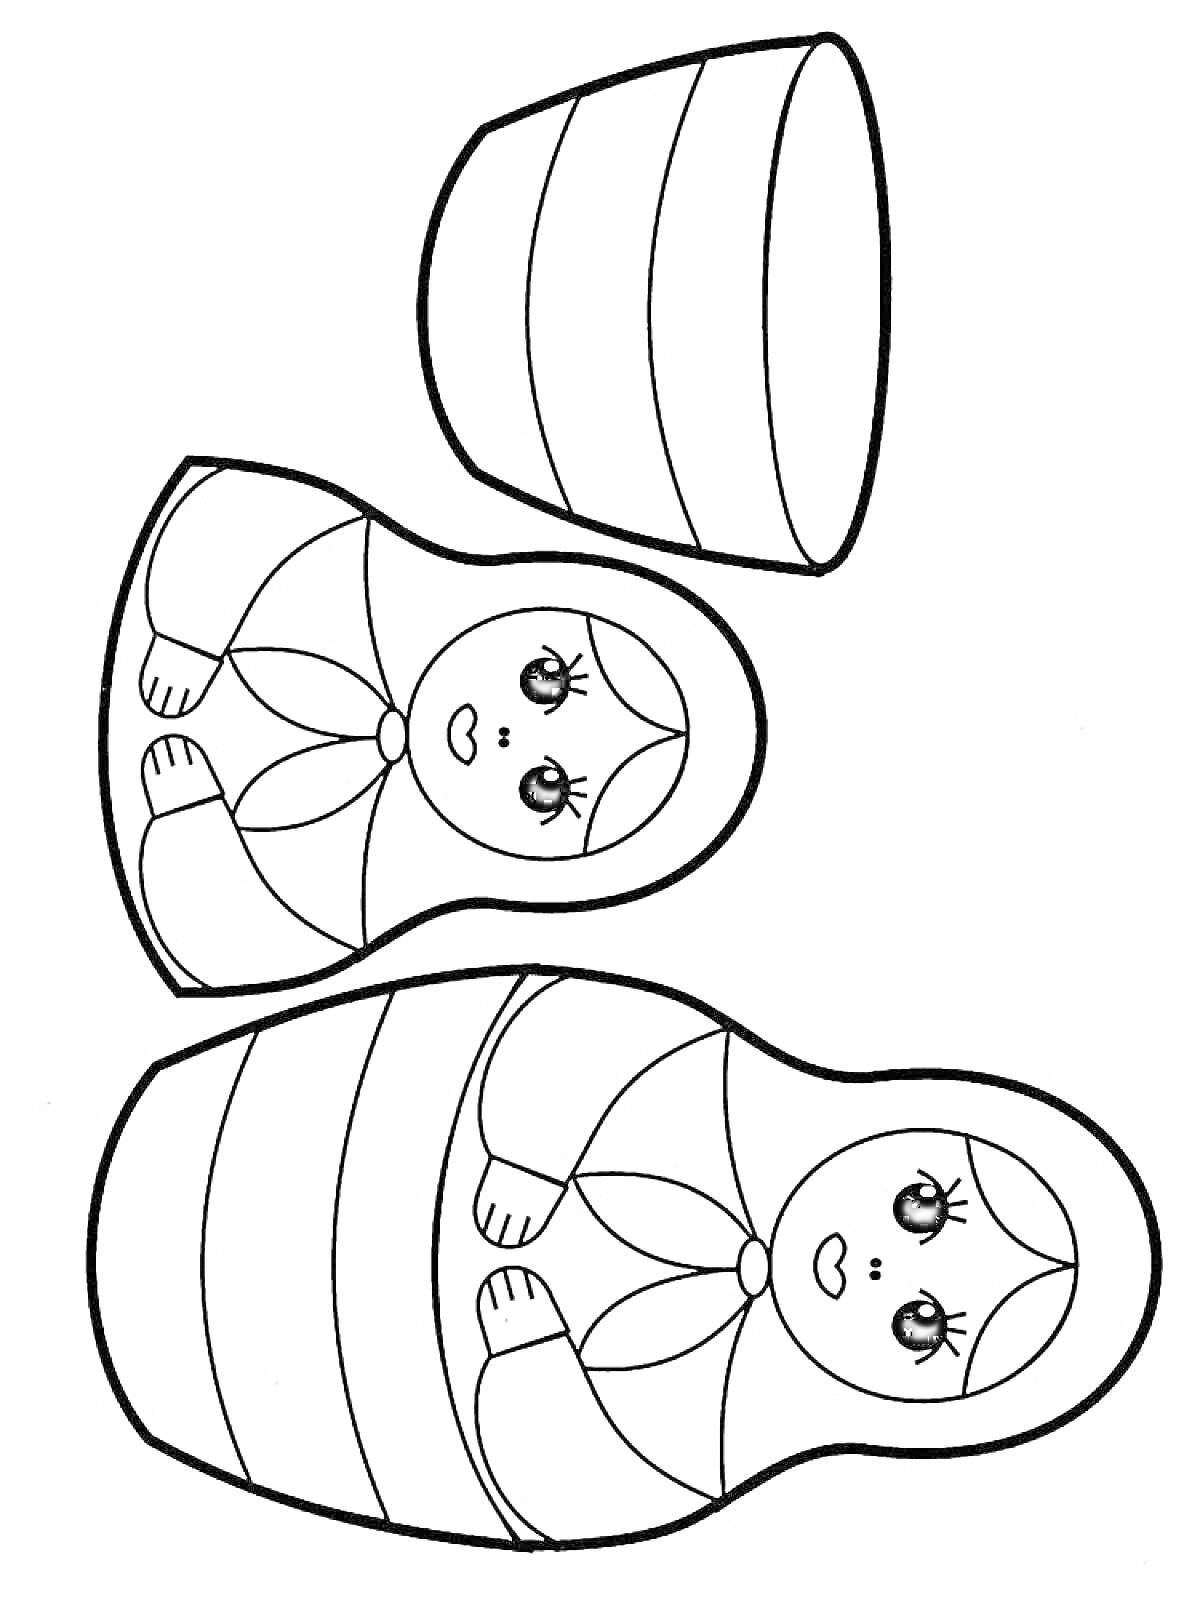 Раскраска Матрешки, две куклы и одна разъединенная наполовину верхняя часть